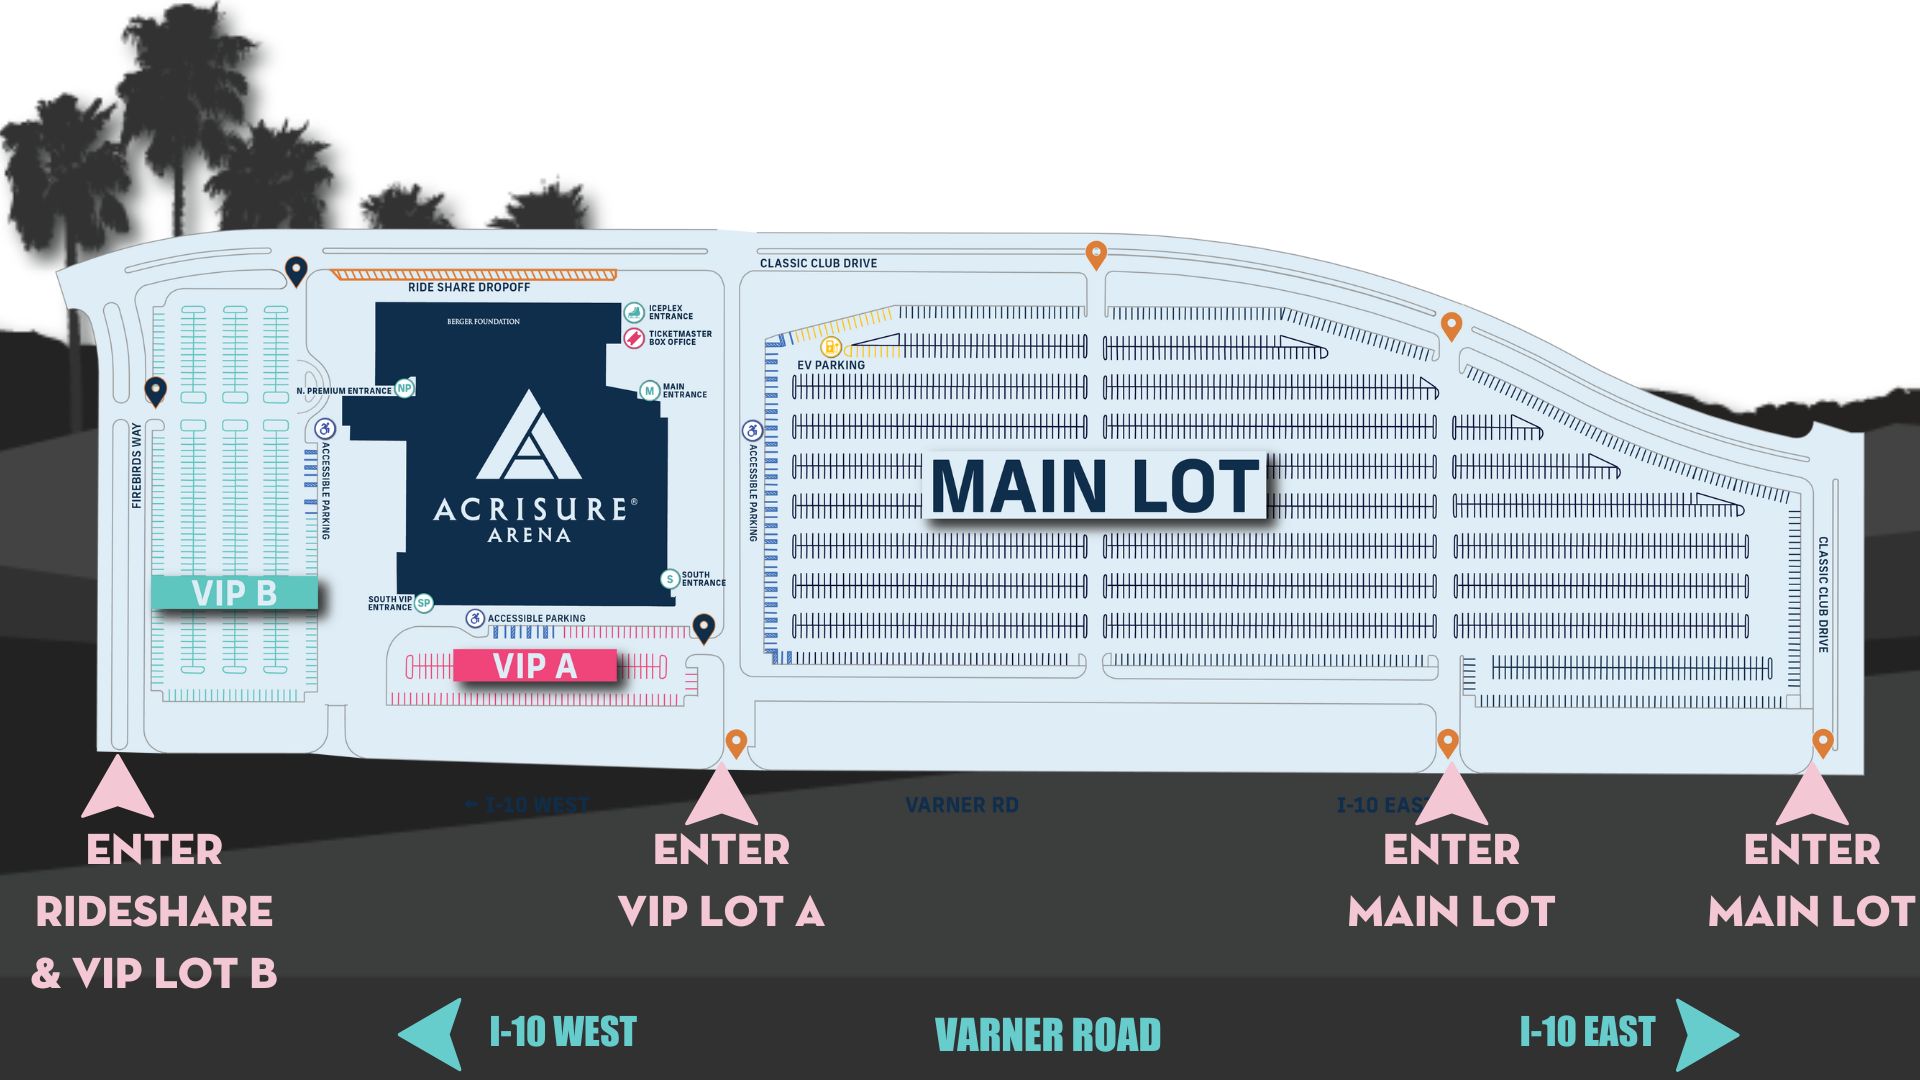 Acrisure Arena parking lot map